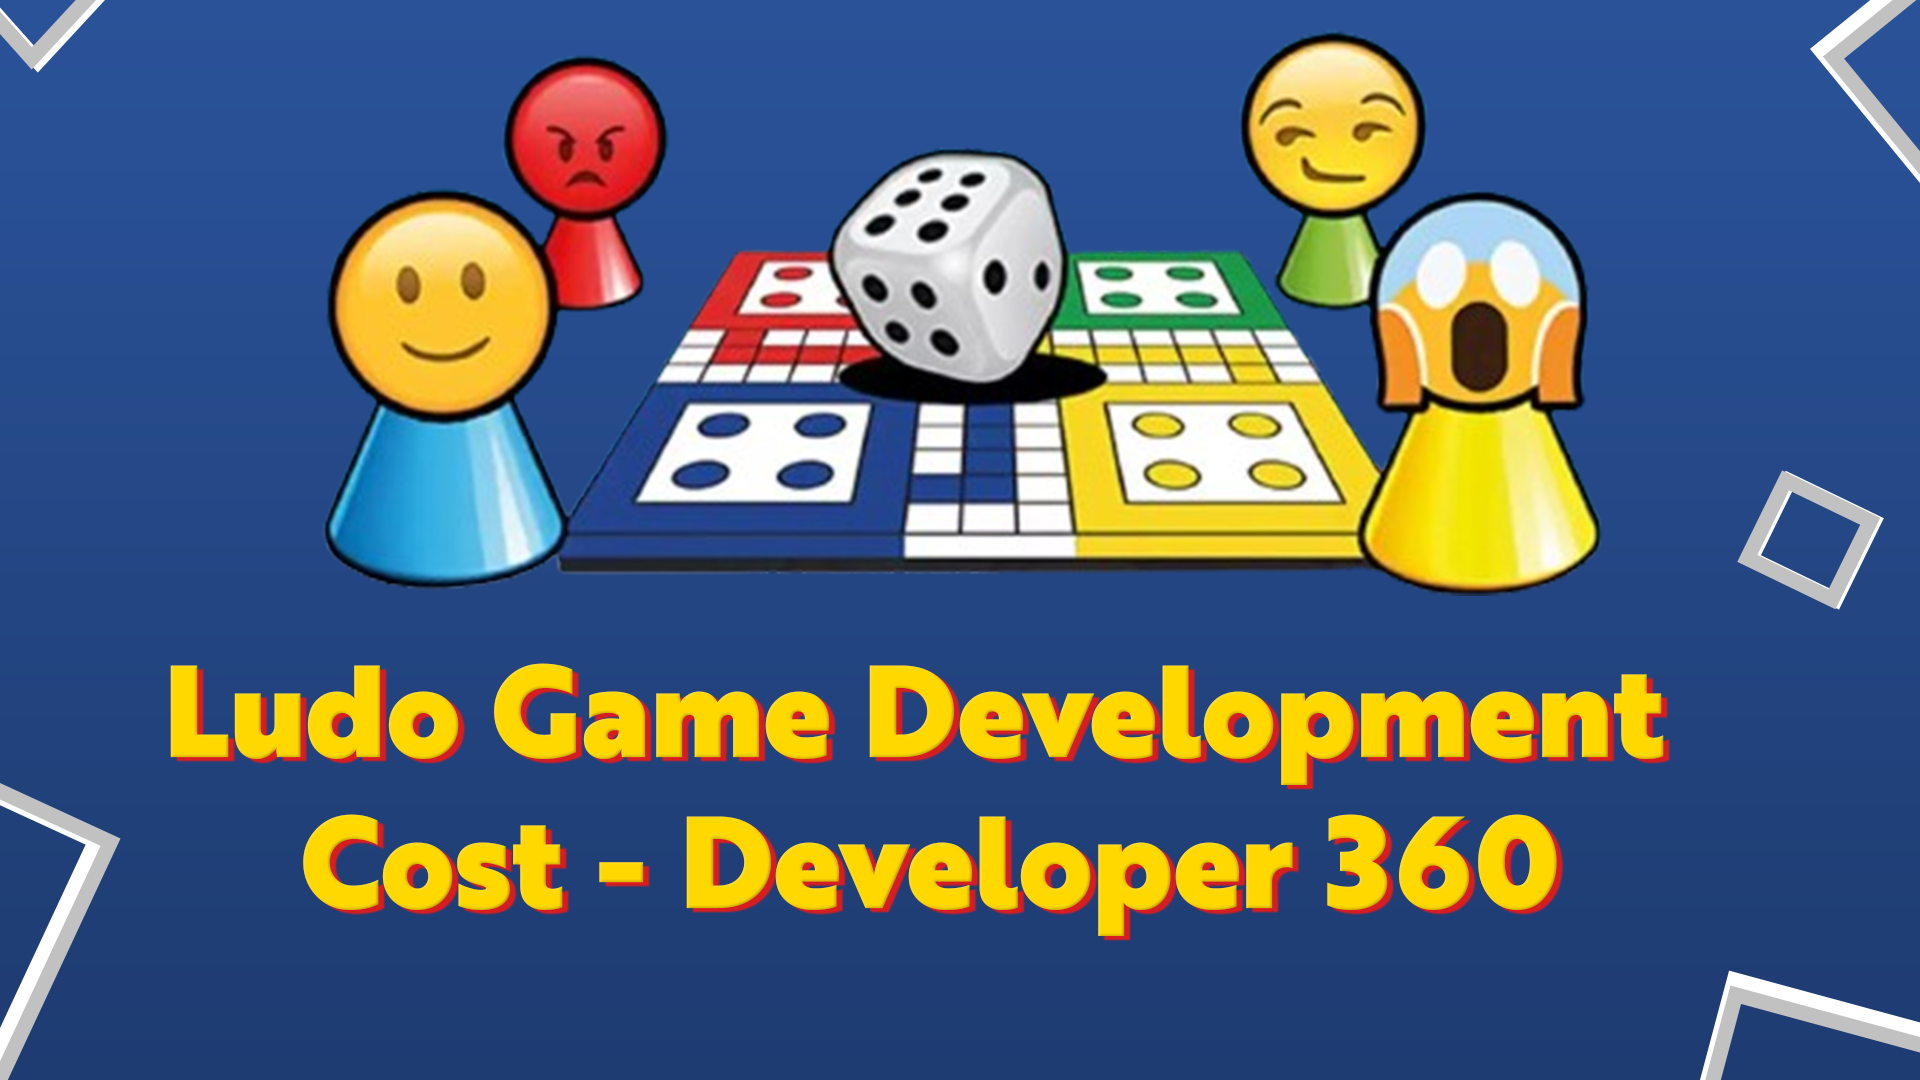 Ludo Game Development Cost - Developer 360